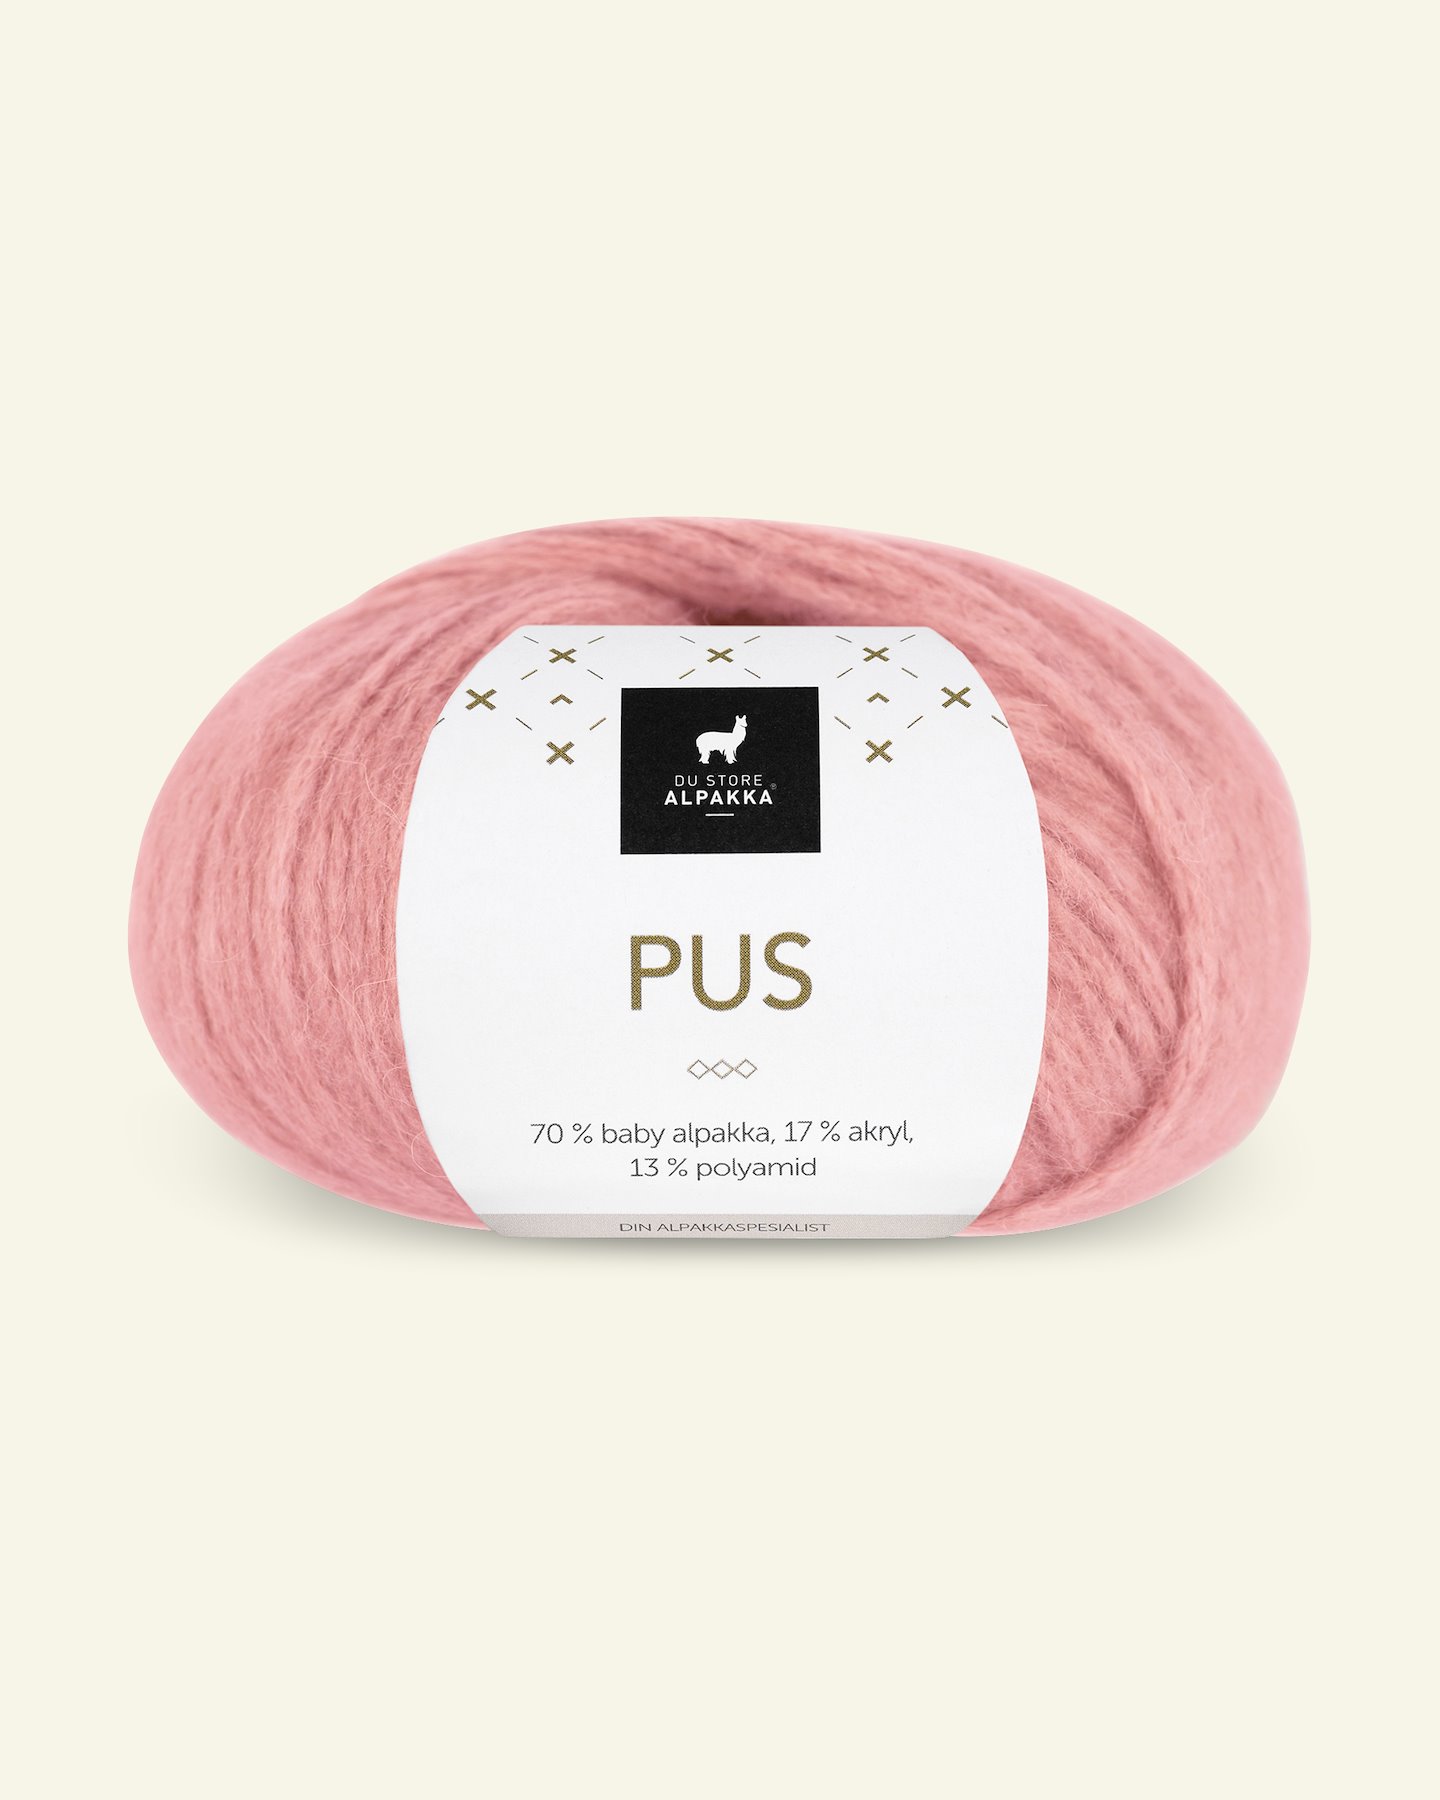 Du Store Alpakka, alpaca blandingsgarn "Pus", rosa (4036) 90000728_pack